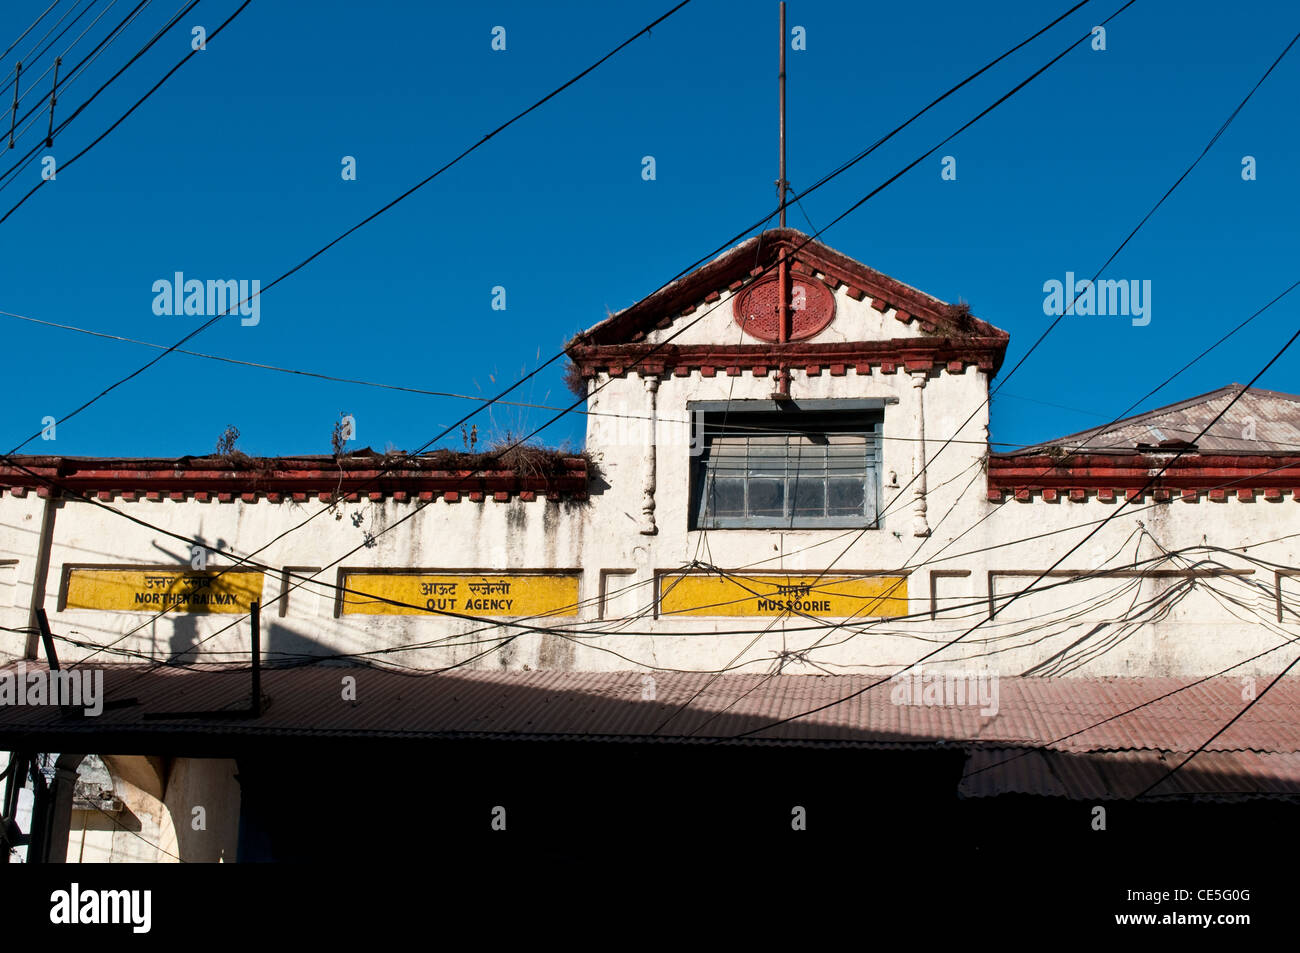 Railway building, Mussoorie, Uttarakhand, India Stock Photo